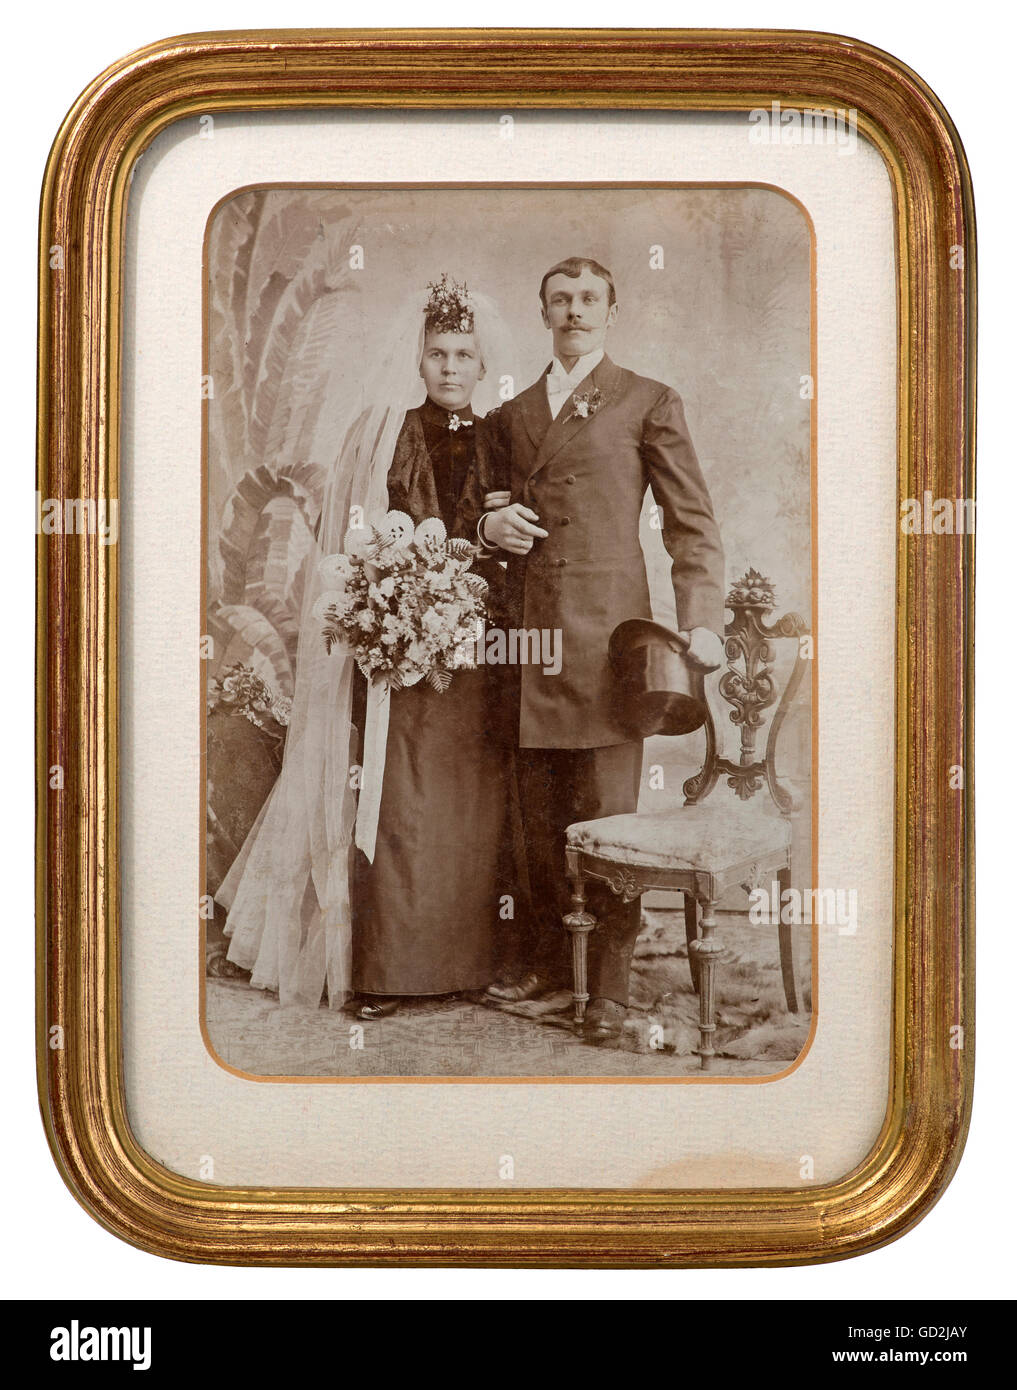 Personen, Paare, Brautpaar, Hochzeitsfoto im vergoldeten Rahmen,  Deutschland, um 1890, Zusatz-Rechteklärung-nicht vorhanden Stockfotografie  - Alamy